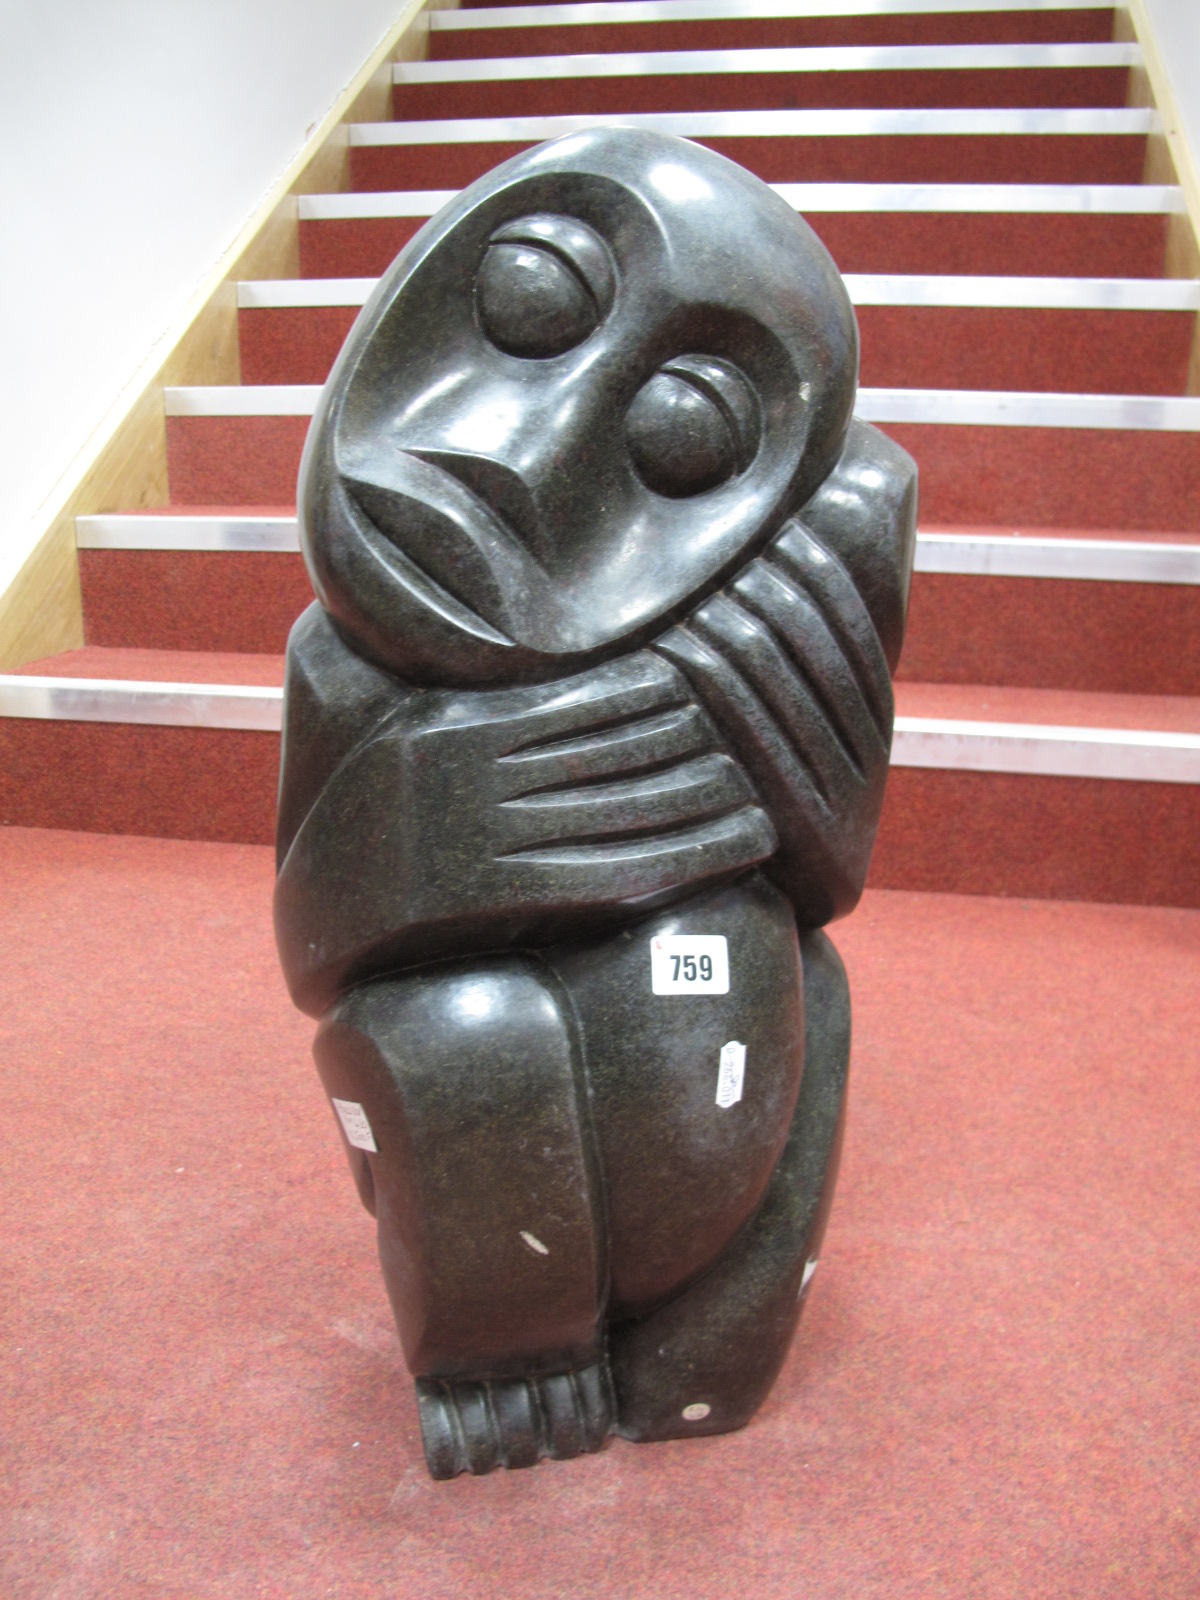 An Abstract Figural Sculpture, "Proud Boy", 59cms high.